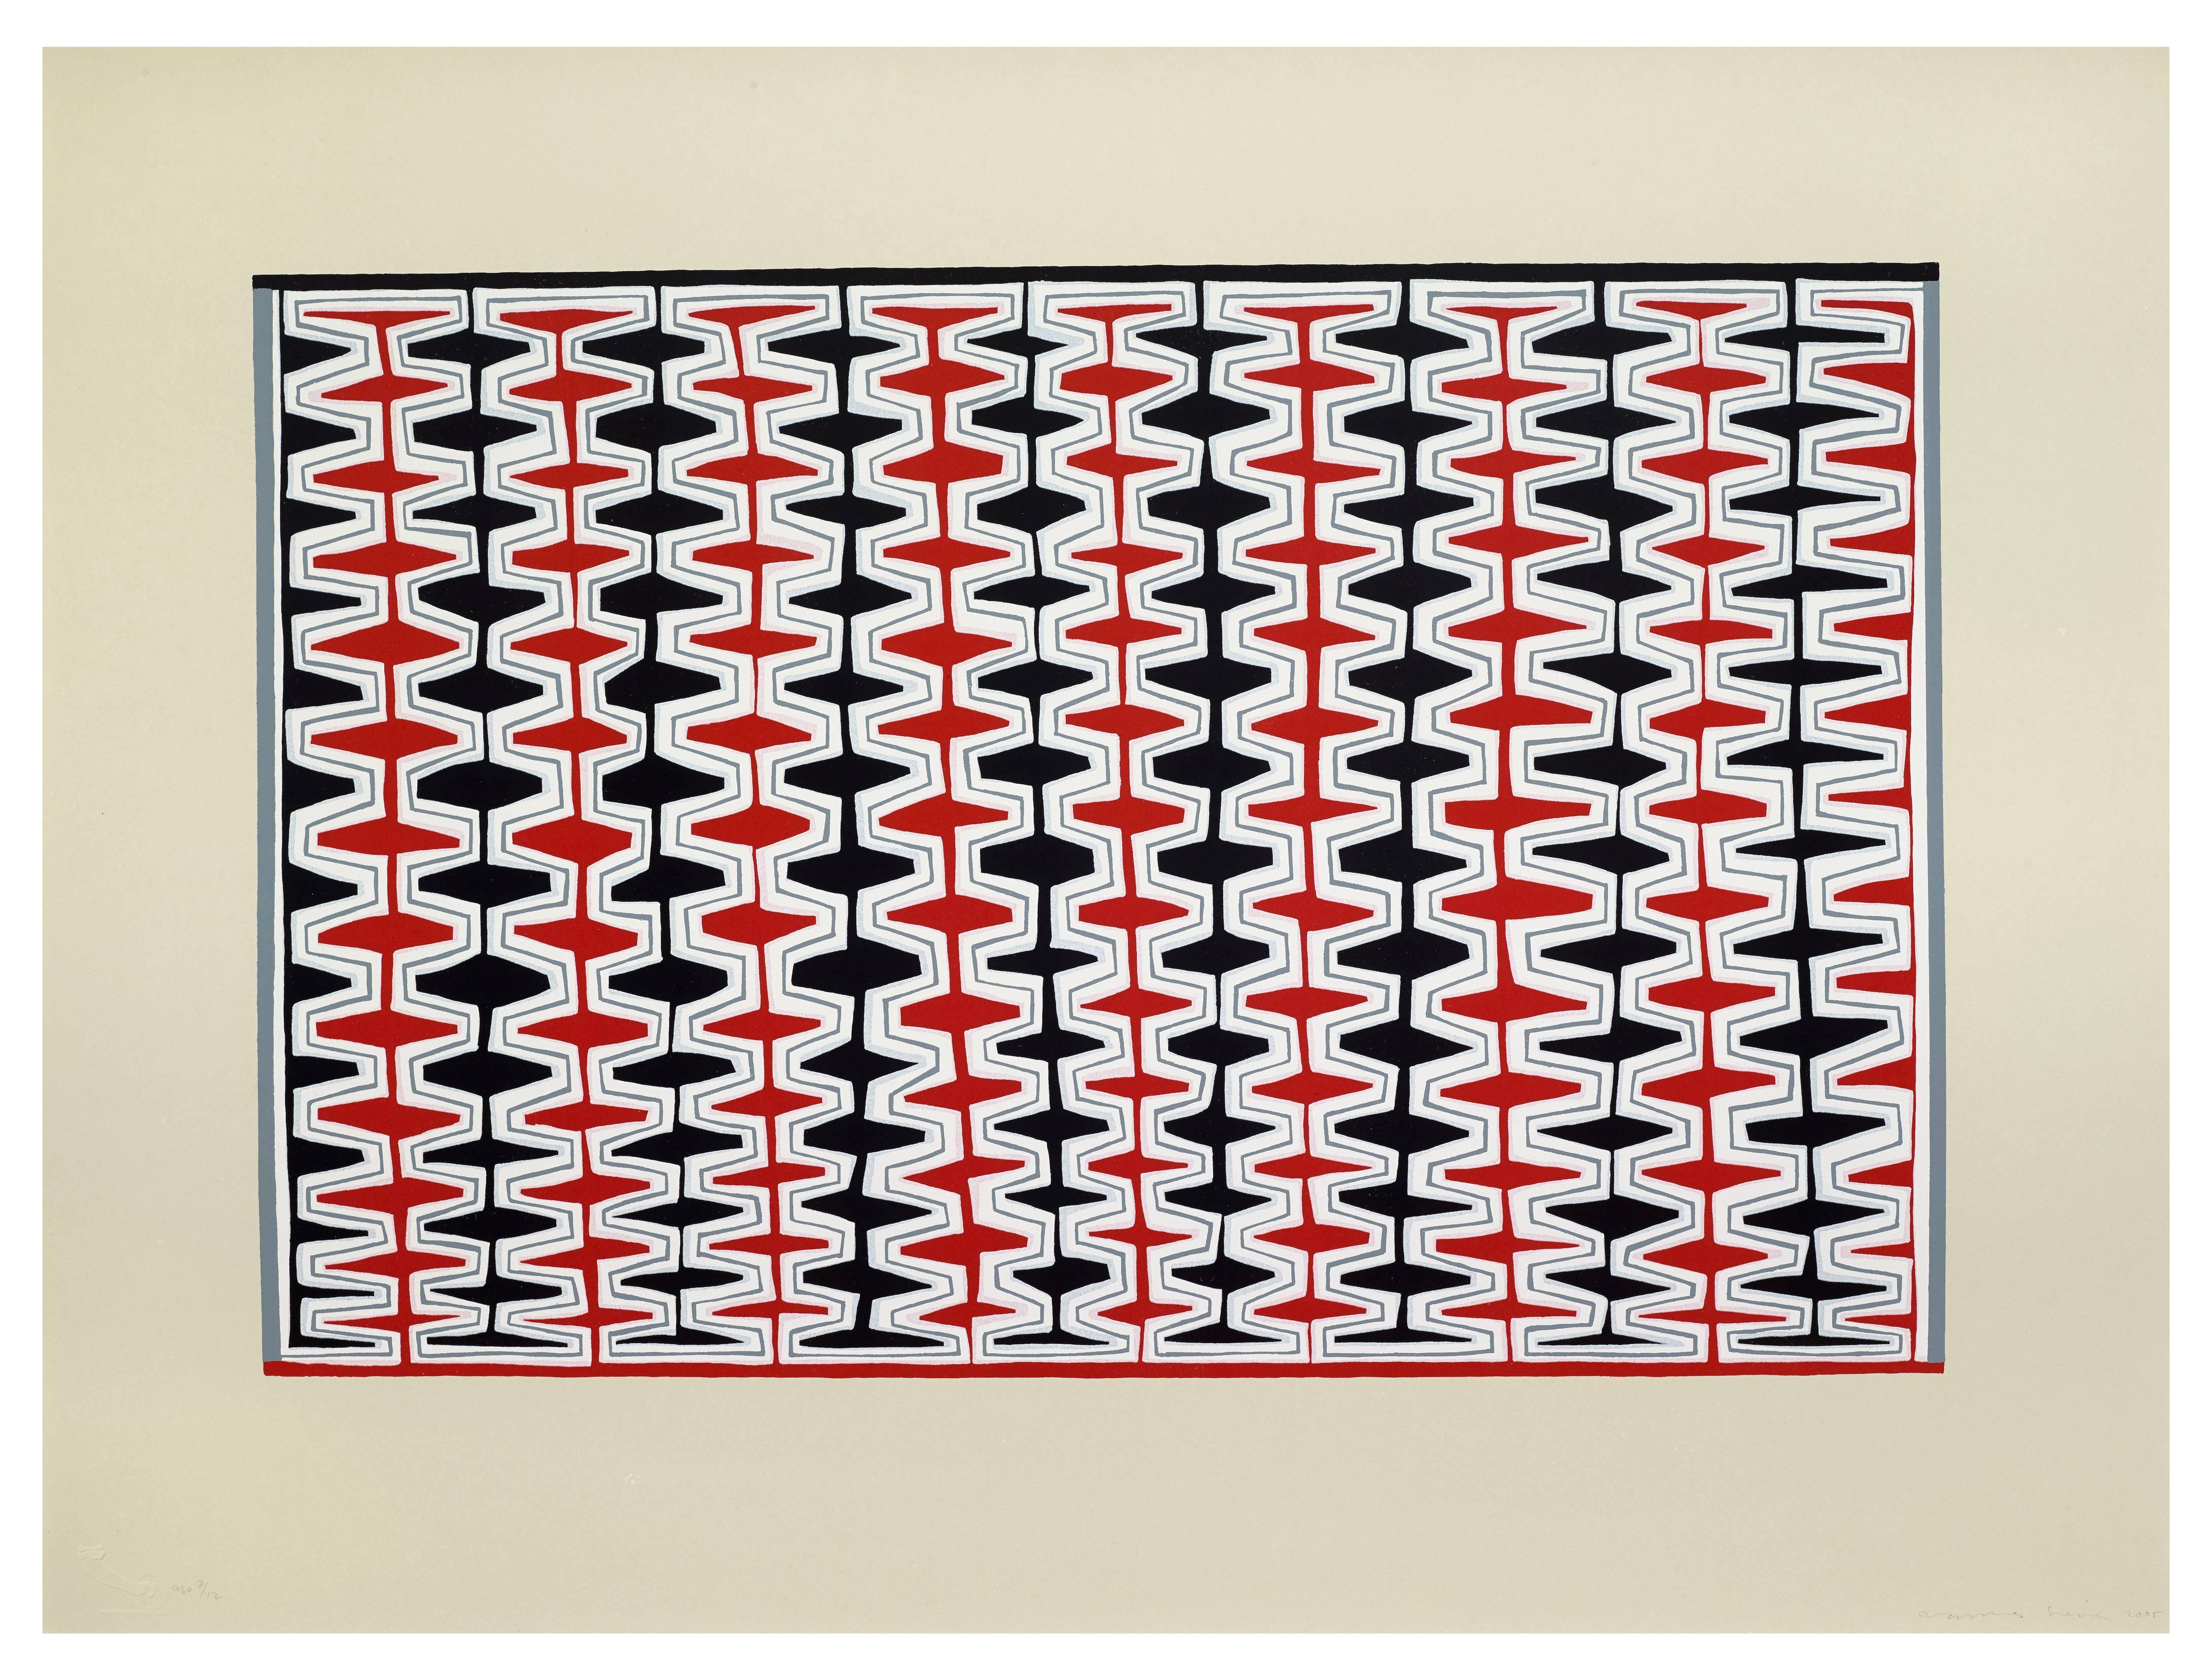 Double Recursive Combs, Boustrophedonic - Print by James Siena